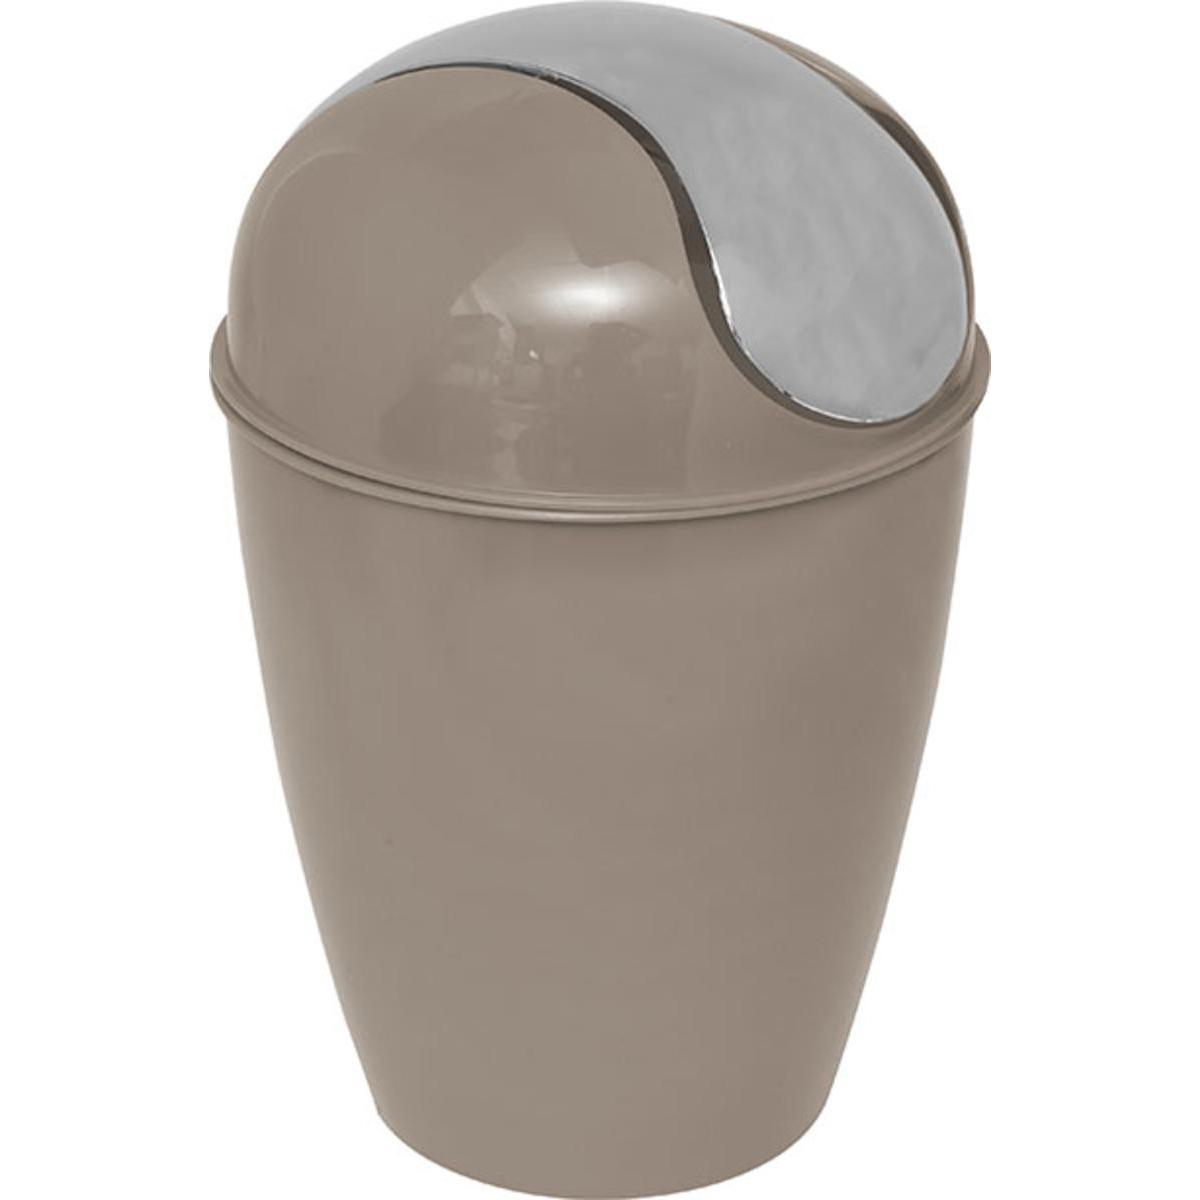 Mini poubelle conique avec couvercle 1,7 L - Marron taupe